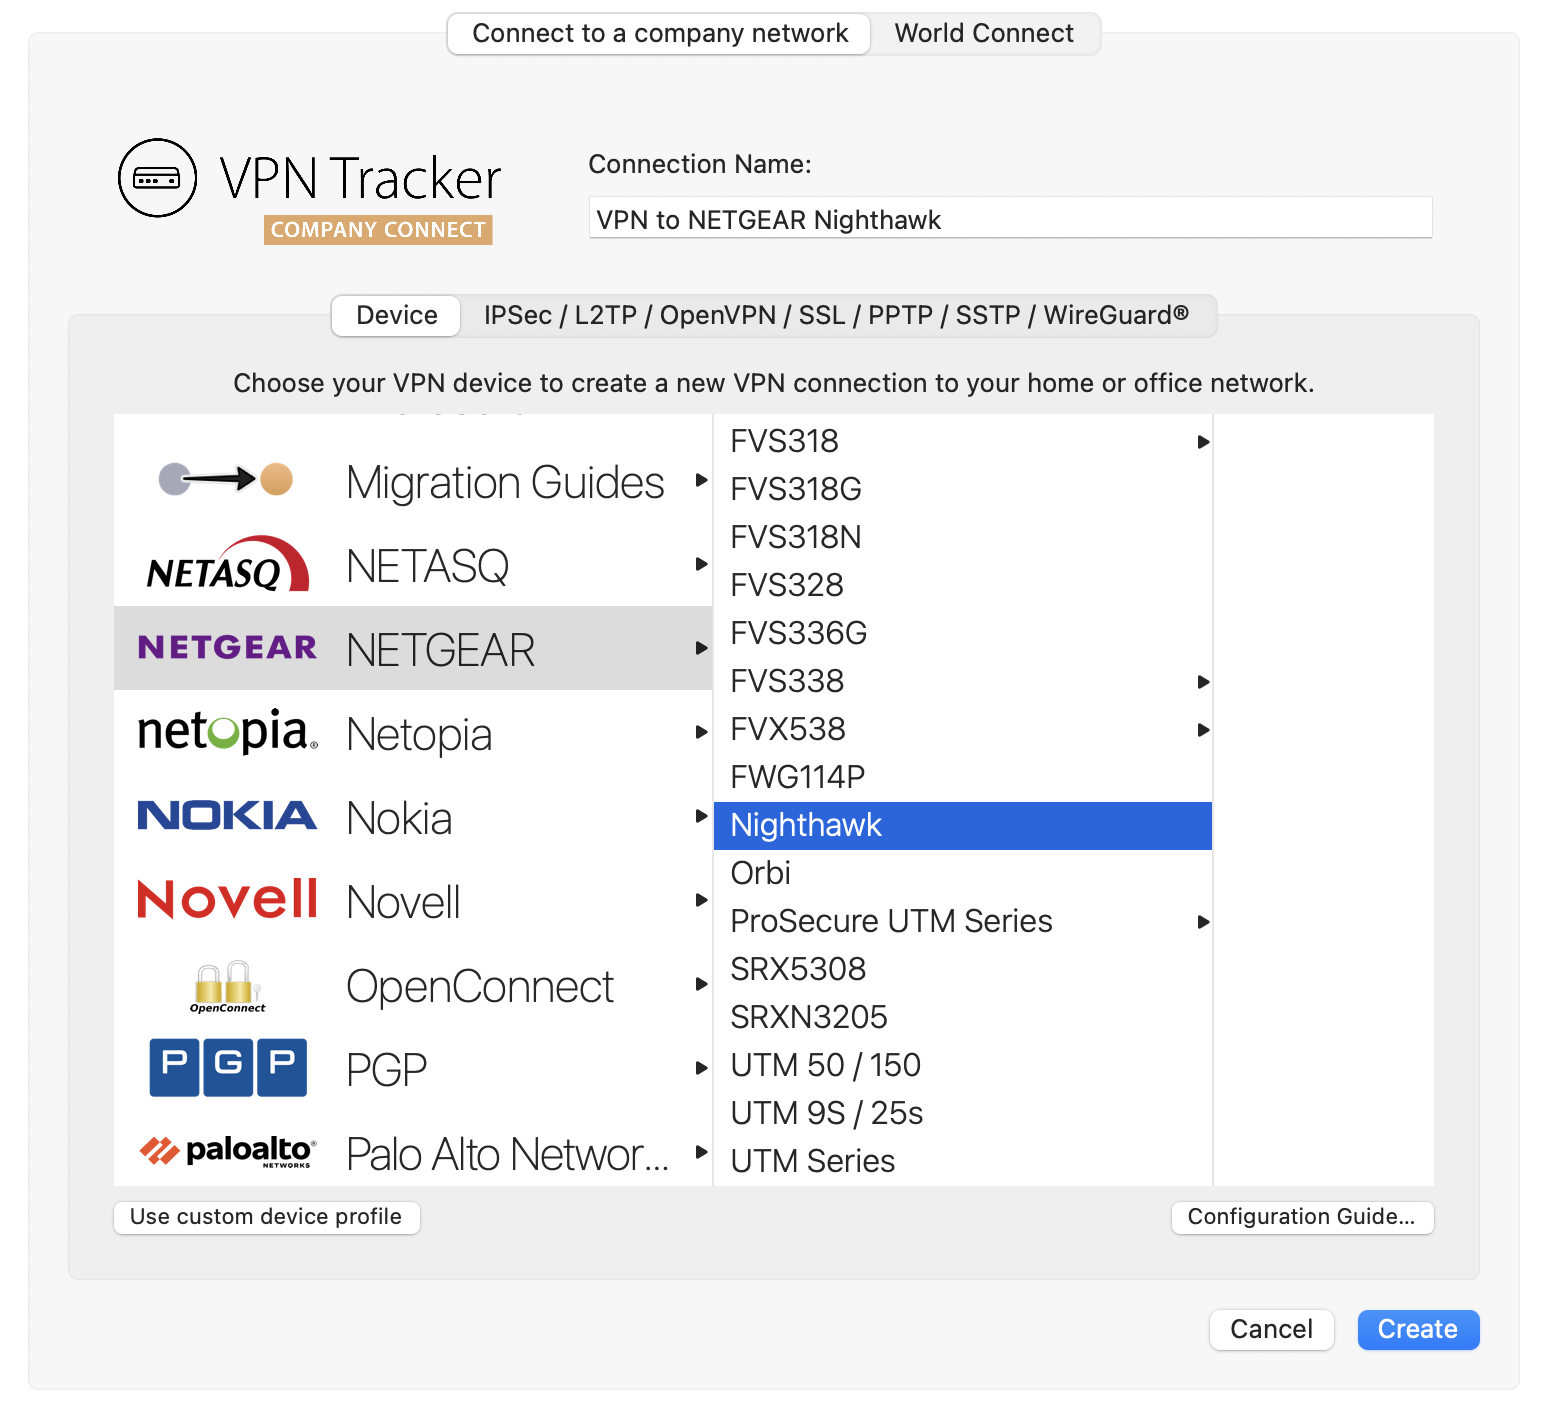 configure netgear vpn connection in vpn tracker